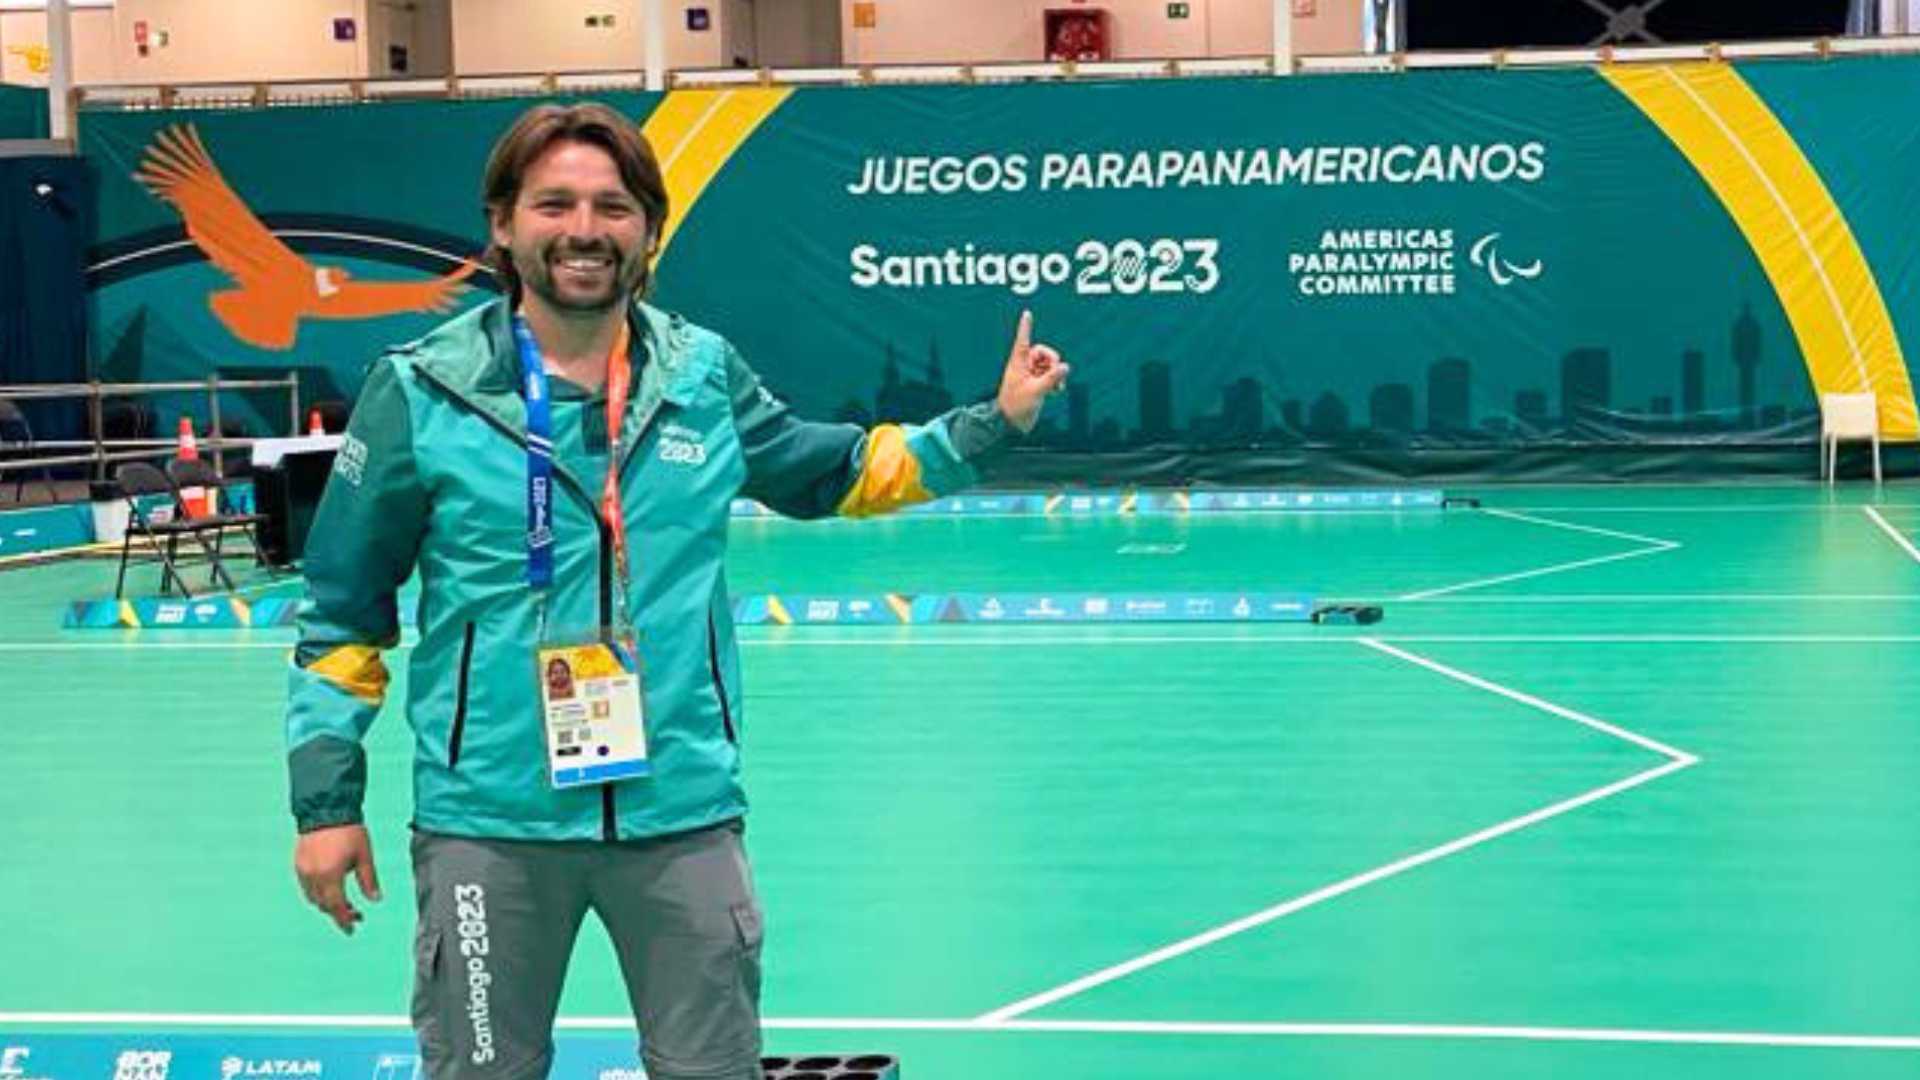 El análisis de Javier Álvarez, sport manager de boccia: “La recepción del público ha sido súper buena”